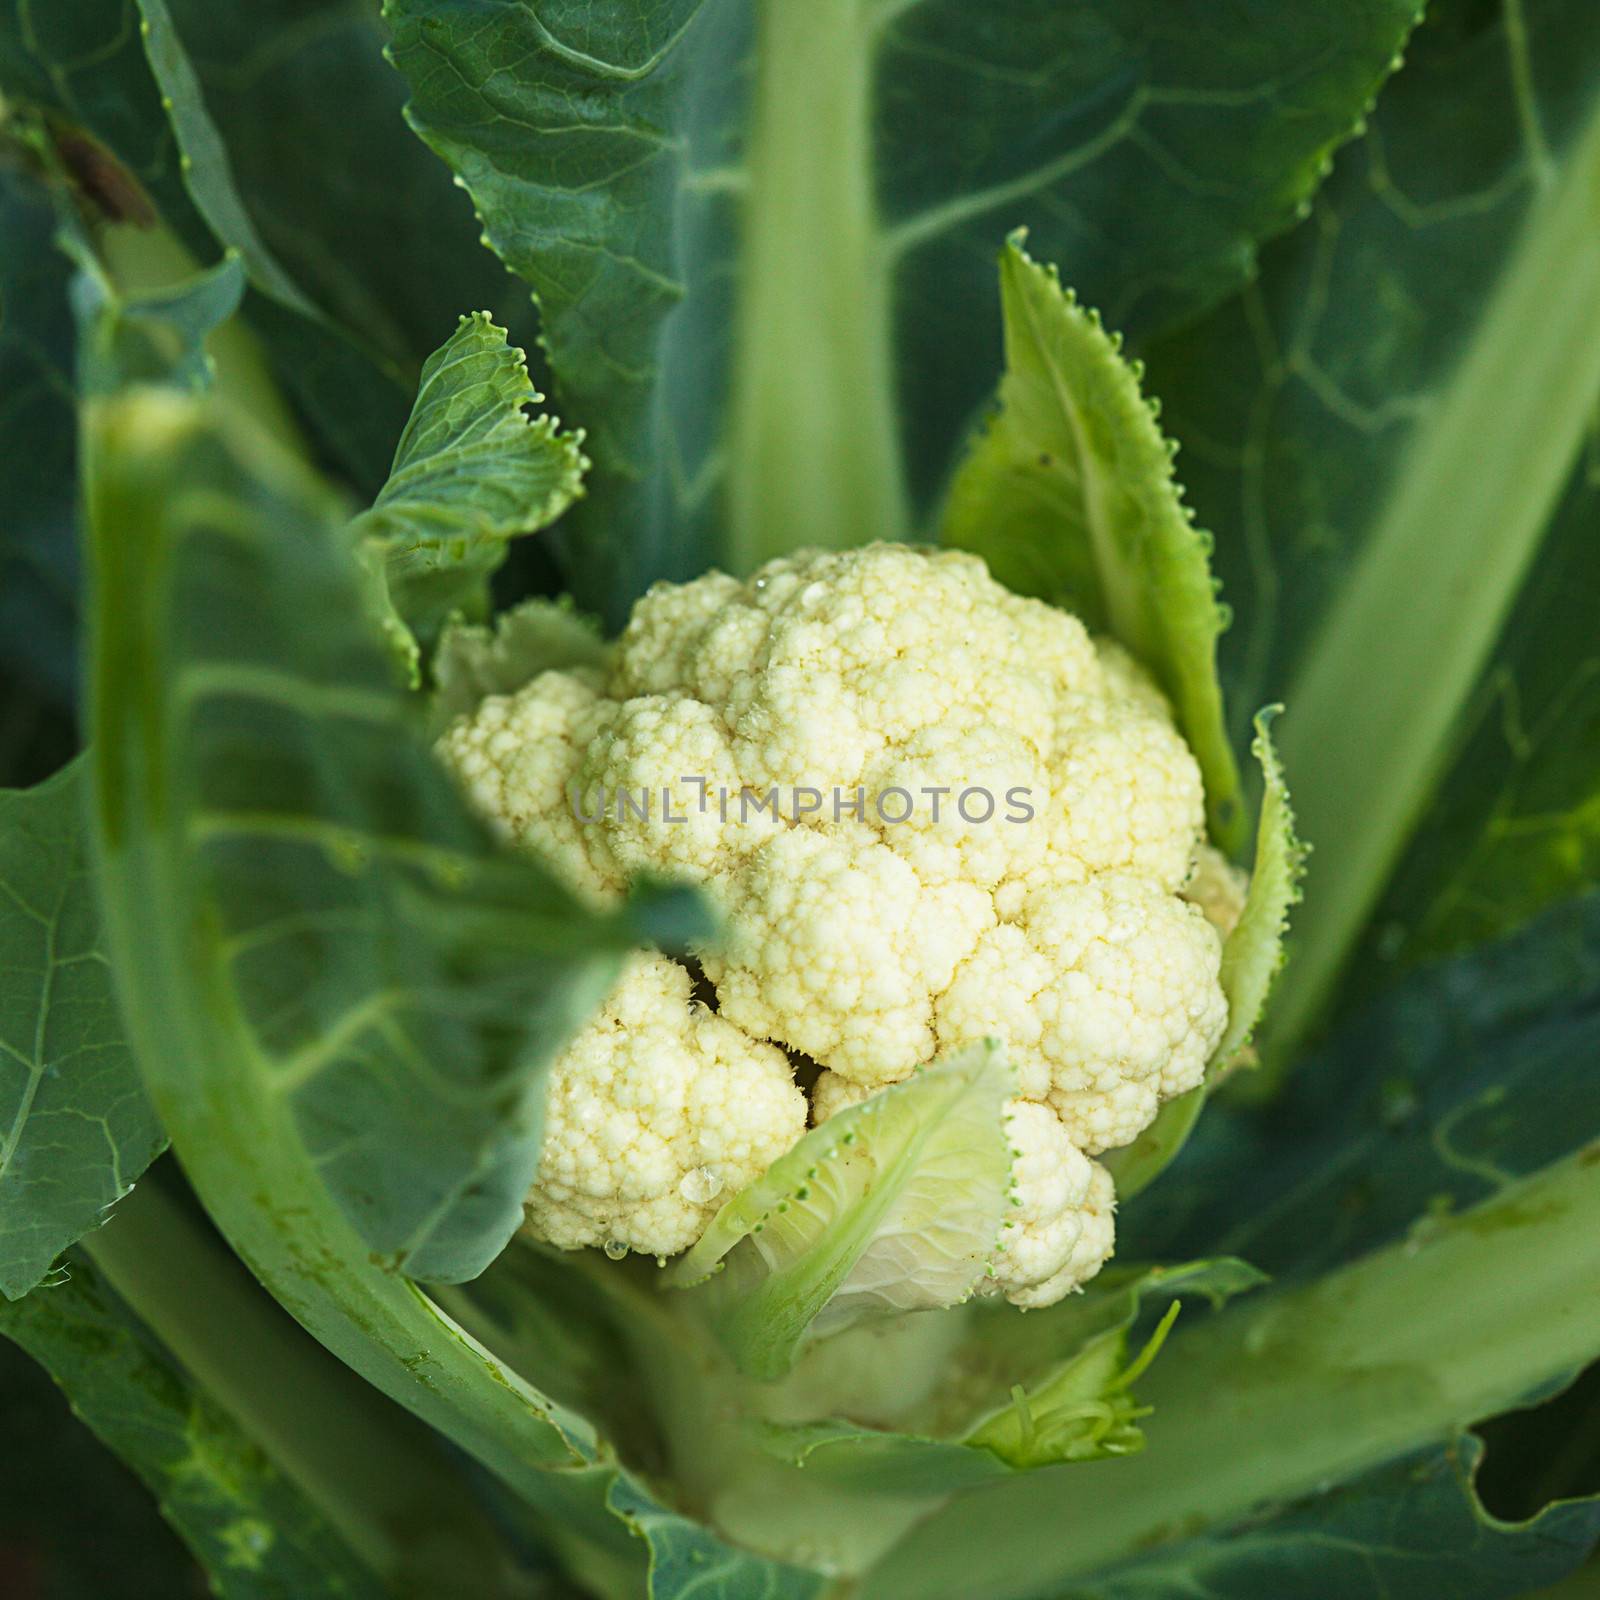 Cauliflower in the garden by oksix